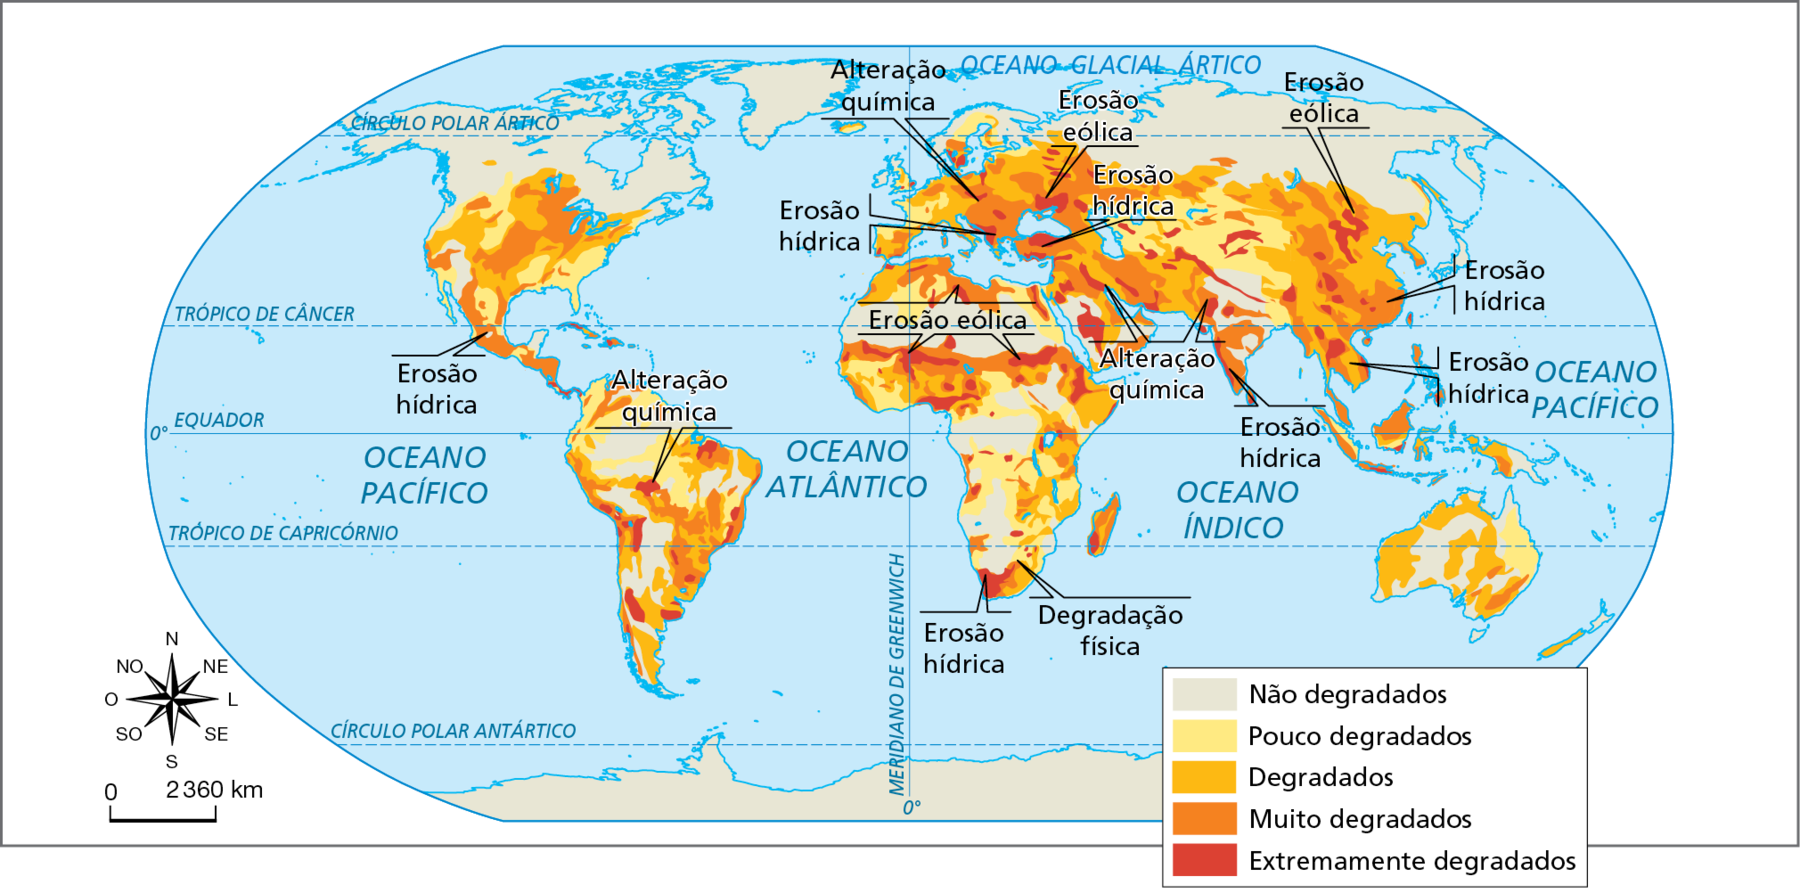 Mapa. Mundo: amplitude da degradação do solo. Mapa mostrando os níveis de degradação do solo ao redor do mundo. De acordo com a legenda, além das áreas com solos não degradados, que aparecem em cinza, as áreas com solos degradados são identificadas em tonalidade de cor que demarcam os diferentes níveis de degradação; nesse caso, as tonalidades de cor variam do mais fraco, em amarelo claro (áreas com solos pouco degradados), para o mais intenso, em vermelho (áreas com solos extremamente degradados).
Amplitude da degradação: 
Solos não degradados: porções situadas no extremo norte do planeta, fragmentos no norte, oeste e nordeste da América do Sul, fragmentos no norte, centro e sul da África, norte da Índia, interior da Austrália e Japão.
Solos pouco degradados: porção sudeste dos Estados Unidos, norte da América do Sul, interior da Europa, interior da Ásia, nordeste da Austrália e fragmentos no oeste, leste e sul da África.
Solos degradados: interior dos Estados Unidos, sudeste, sul e oeste da América do Sul, interior da Europa, norte e leste da África, interior do Oriente Médio, leste e sudeste da Ásia, oeste e interior da Austrália. 
Solos muito degradados: interior dos Estados Unidos, México (erosão hídrica) e América Central, oeste da Índia, interior dos Estados Unidos, sudeste, sul e oeste da América do Sul, interior da Europa, norte e leste da África, interior do Oriente Médio, leste e sudeste da Ásia (erosão hídrica).
Solos extremamente degradados: fragmentos no interior e sul da América do Sul (alteração química), fragmentos na África do Sul (erosão hídrica e degradação física) e norte da África (erosão eólica), Península Arábica (alteração química), Leste Europeu (erosão hídrica), Índia (alteração química), diversos fragmentos no interior da Ásia (erosão eólica).
Na parte inferior, rosa dos ventos e escala de 0 a 2.360 quilômetros.